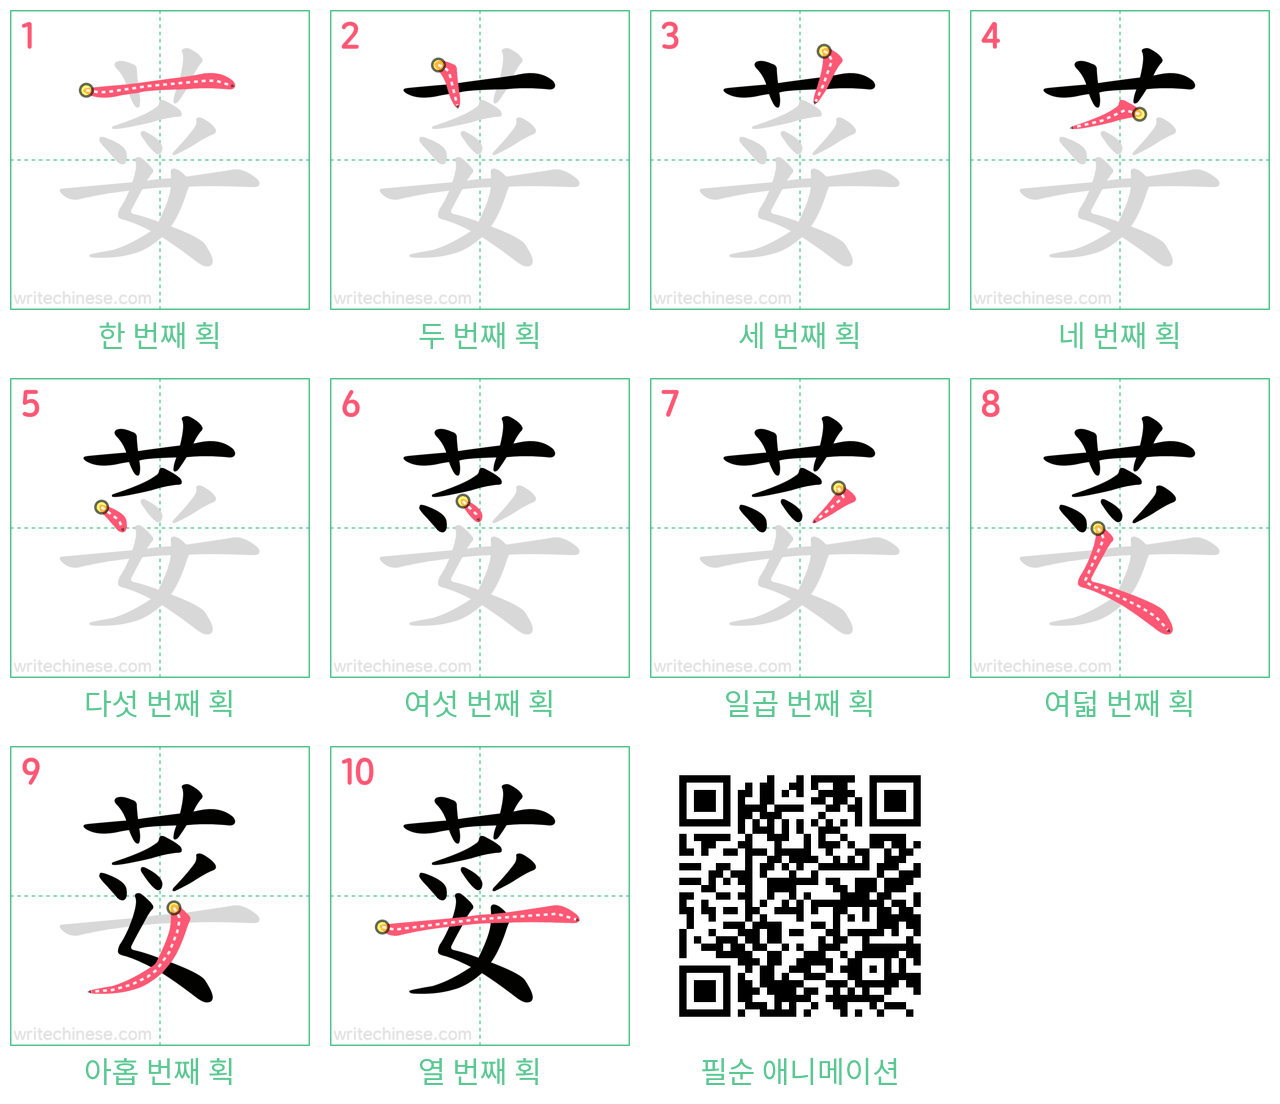 荽 step-by-step stroke order diagrams